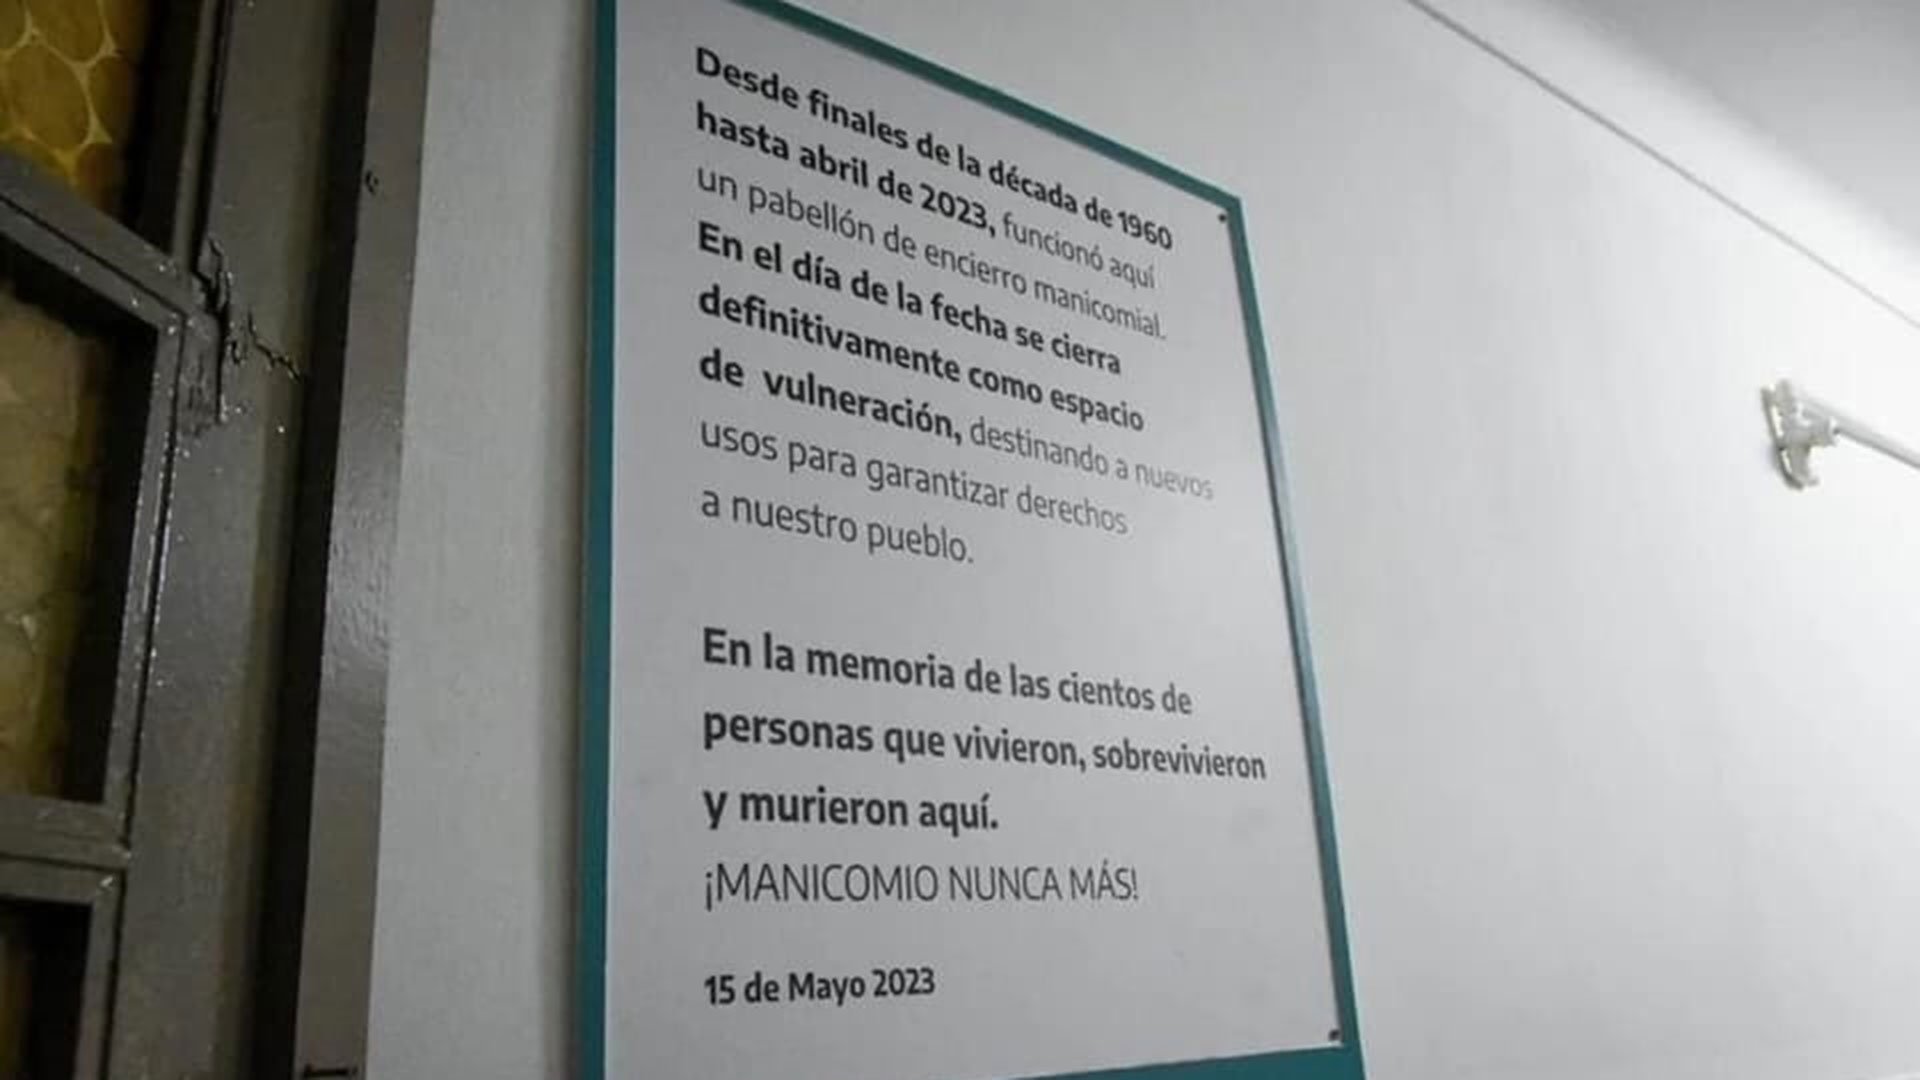 "¡Manicomio nunca más!": el insólito y agraviante cartel que el gobierno de Kicillof colocó en el hospital Alejandro Korn